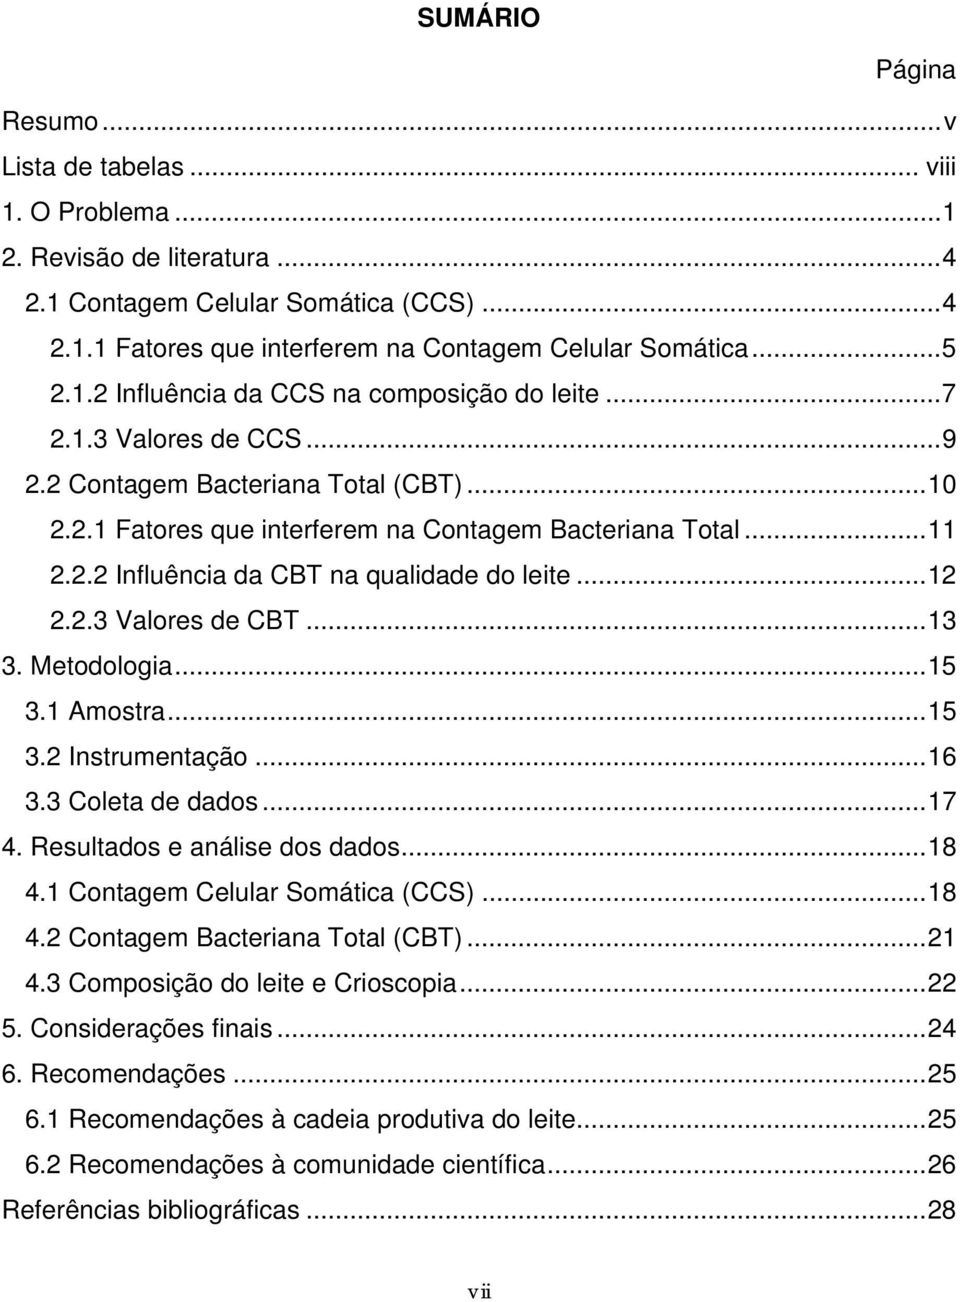 ..12 2.2.3 Valores de CBT...13 3. Metodologia...15 3.1 Amostra...15 3.2 Instrumentação...16 3.3 Coleta de dados...17 4. Resultados e análise dos dados...18 4.1 Contagem Celular Somática (CCS)...18 4.2 Contagem Bacteriana Total (CBT).